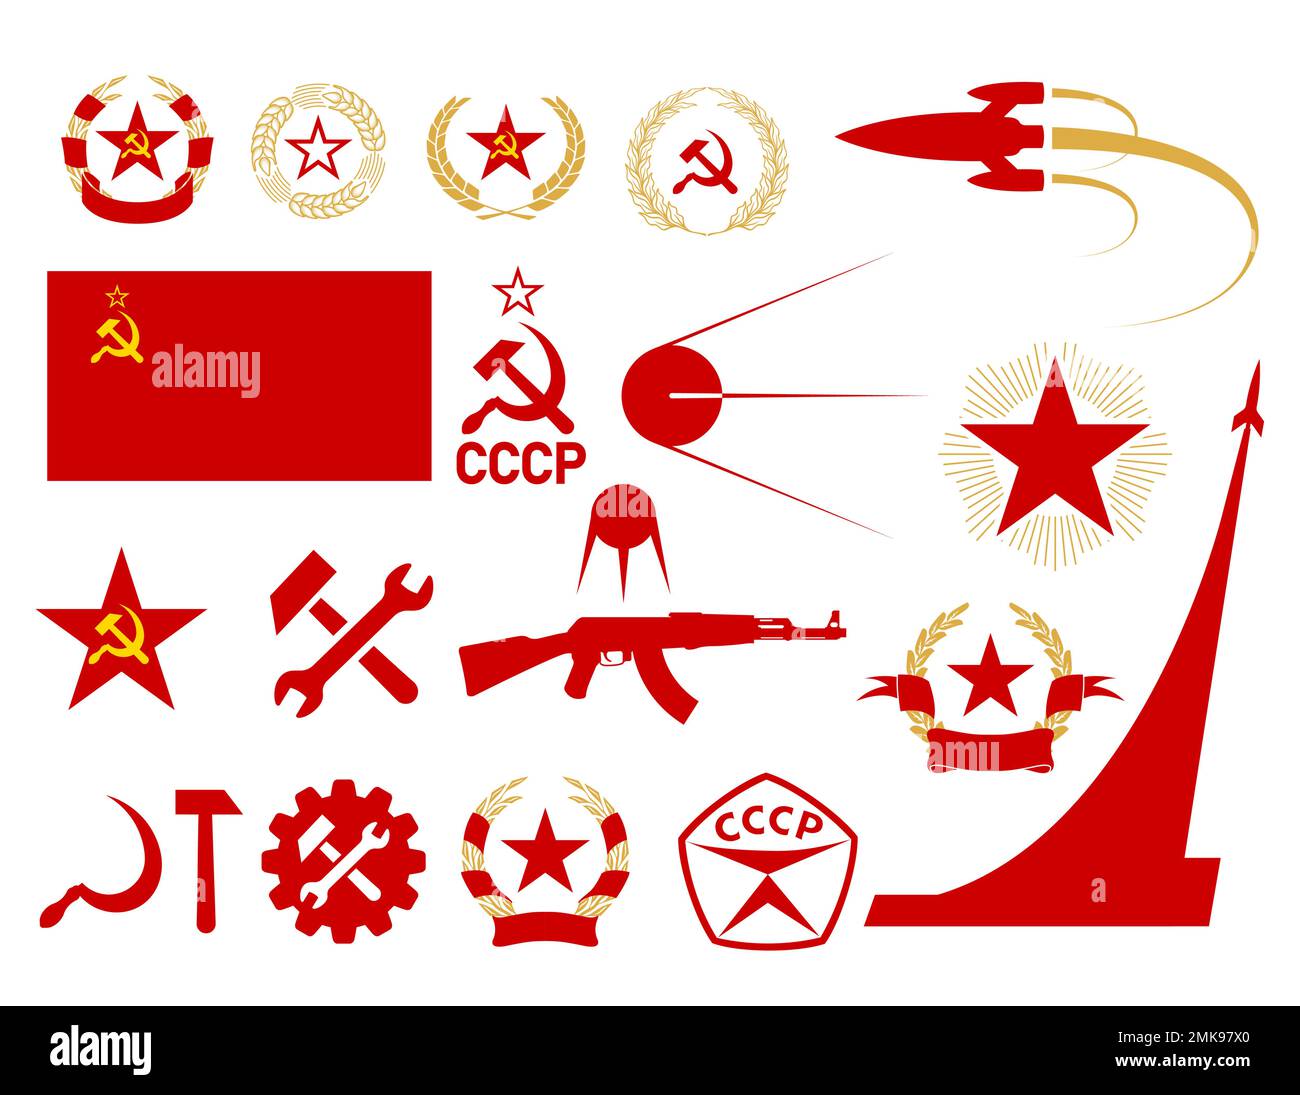 Symbole der UdSSR, Symbole des Kommunismus und Sozialismus, sowjetische Symbole, Stern, Hammer und Sichel, Flagge und Stern der UdSSR, Weizen- und Lorbeerkranz, Speck Stock Vektor